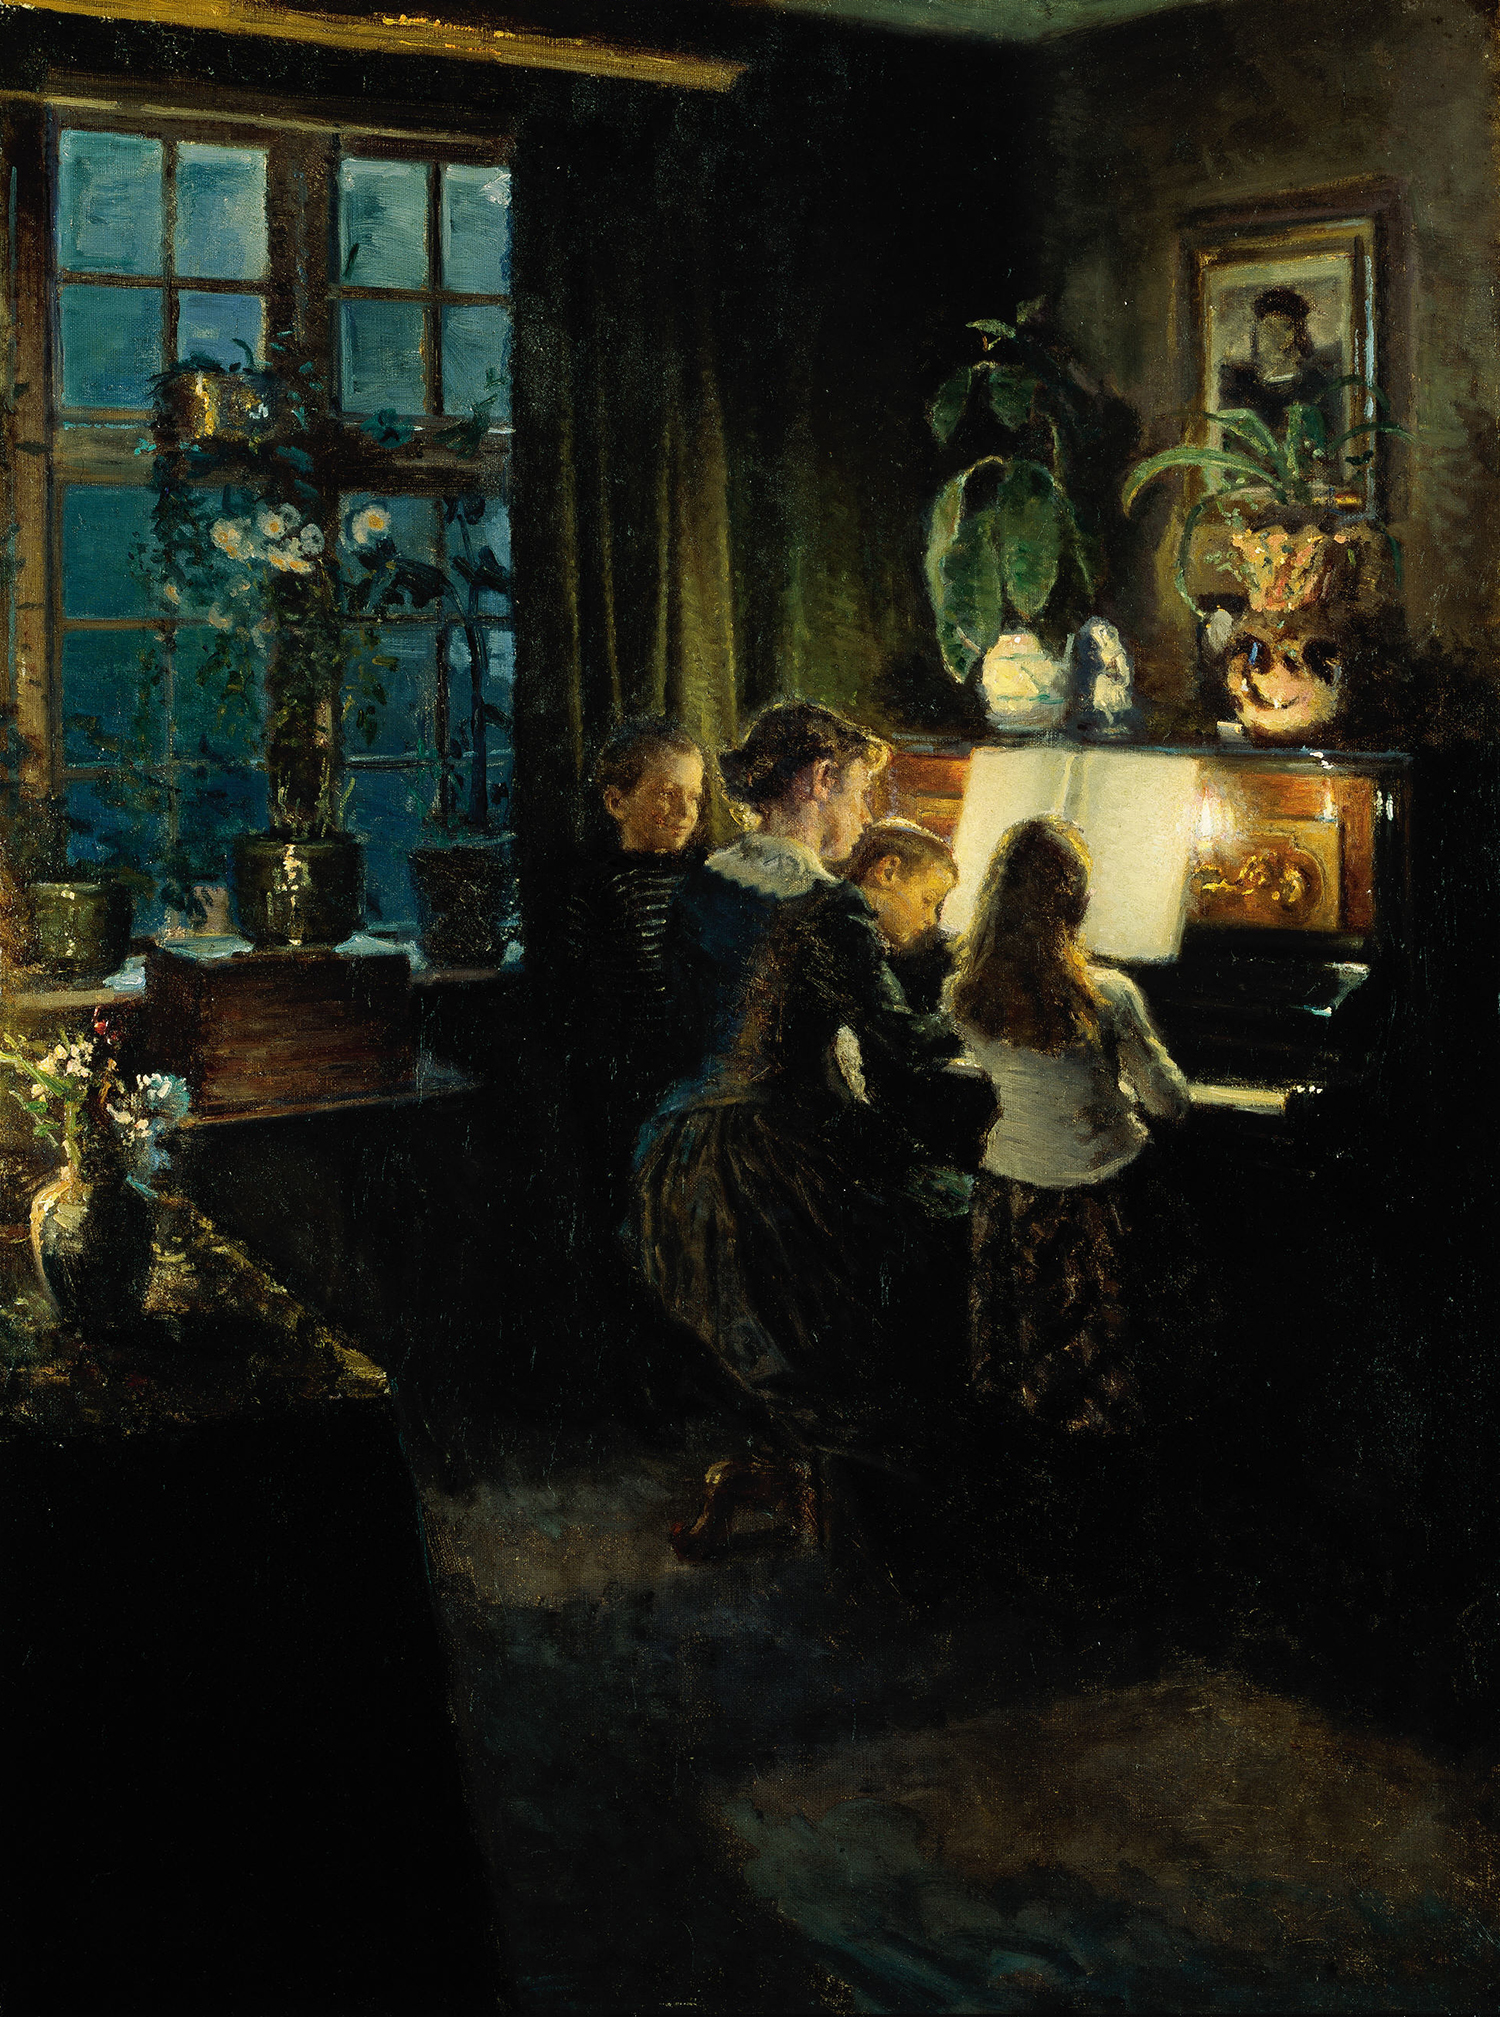 钢琴旁的艺术家的妻子和孩子 by 维格 约翰森 - 1891 - 1892 - - 